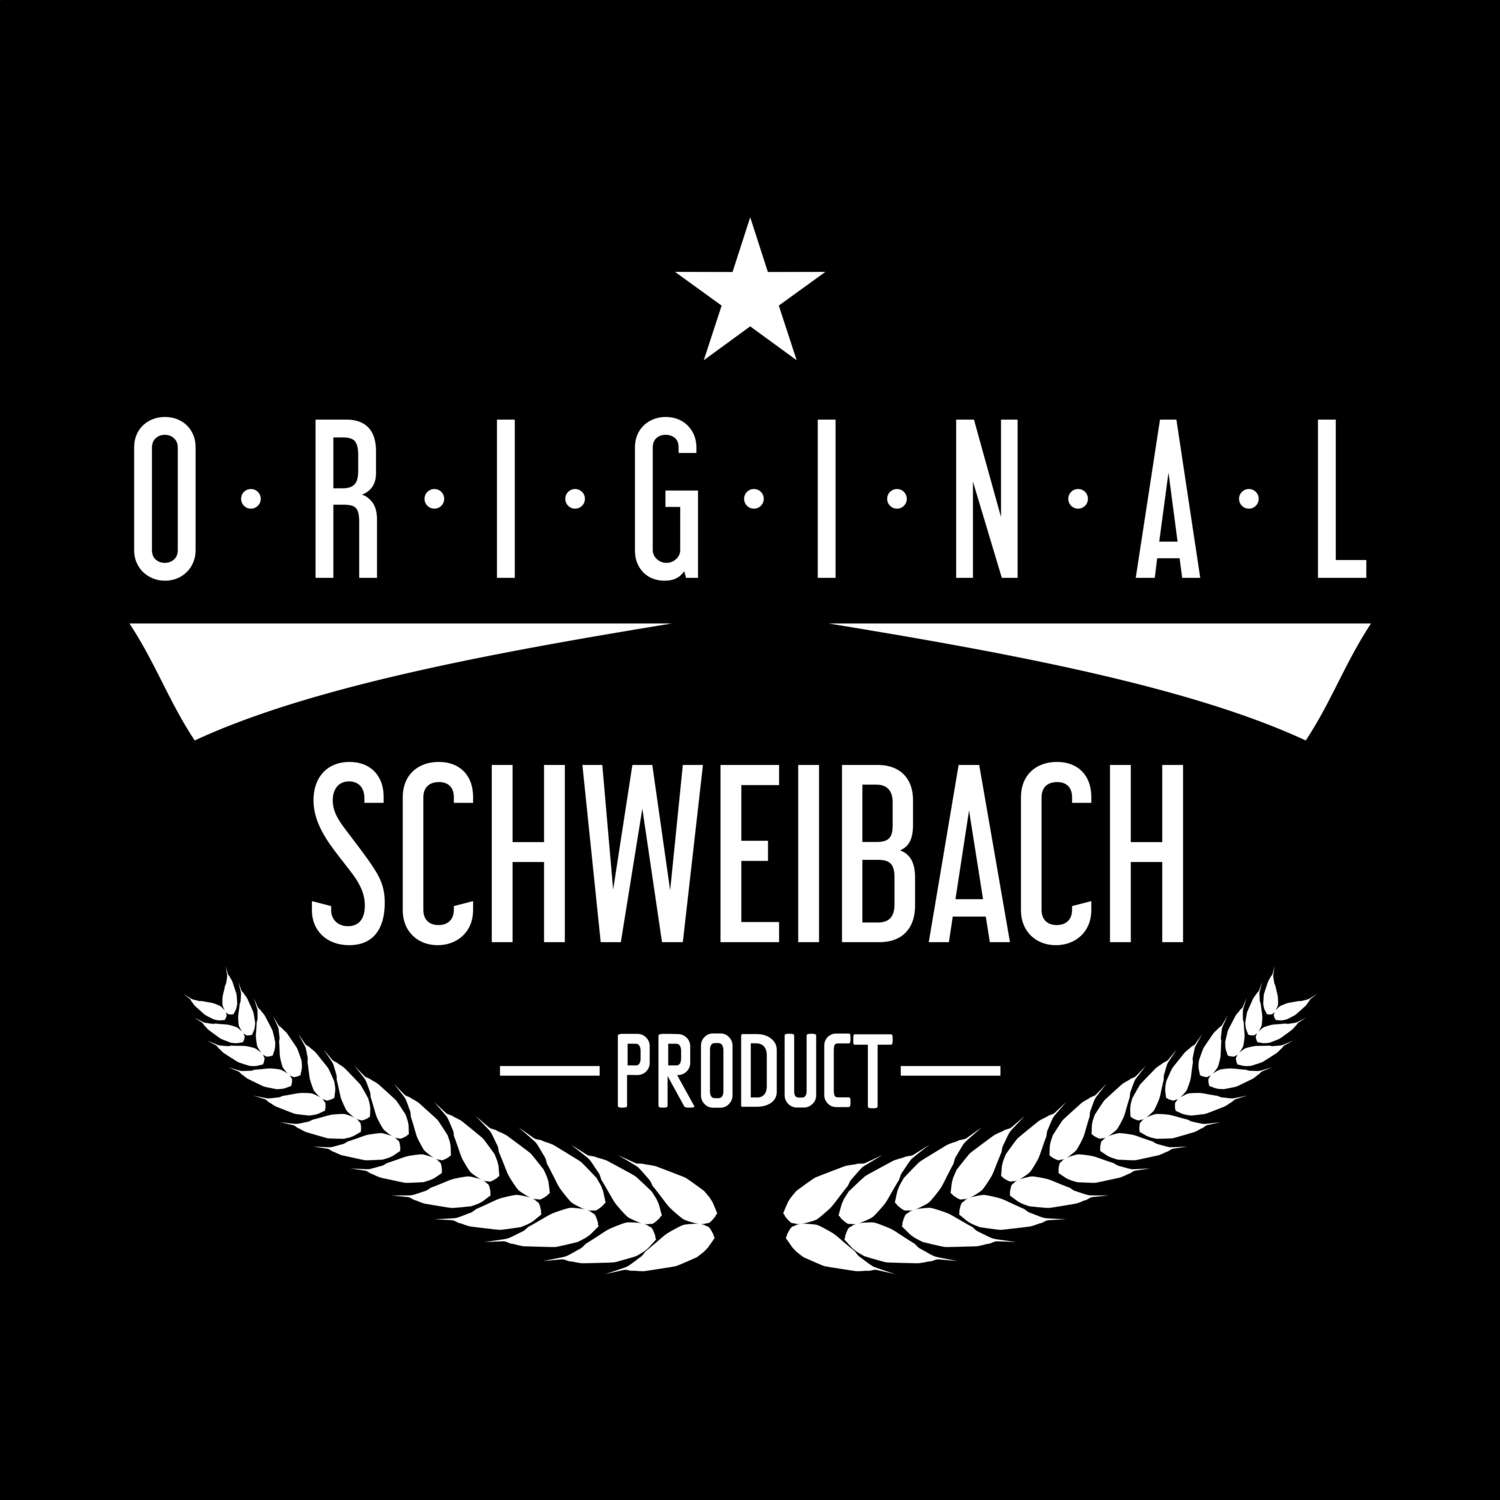 Schweibach T-Shirt »Original Product«